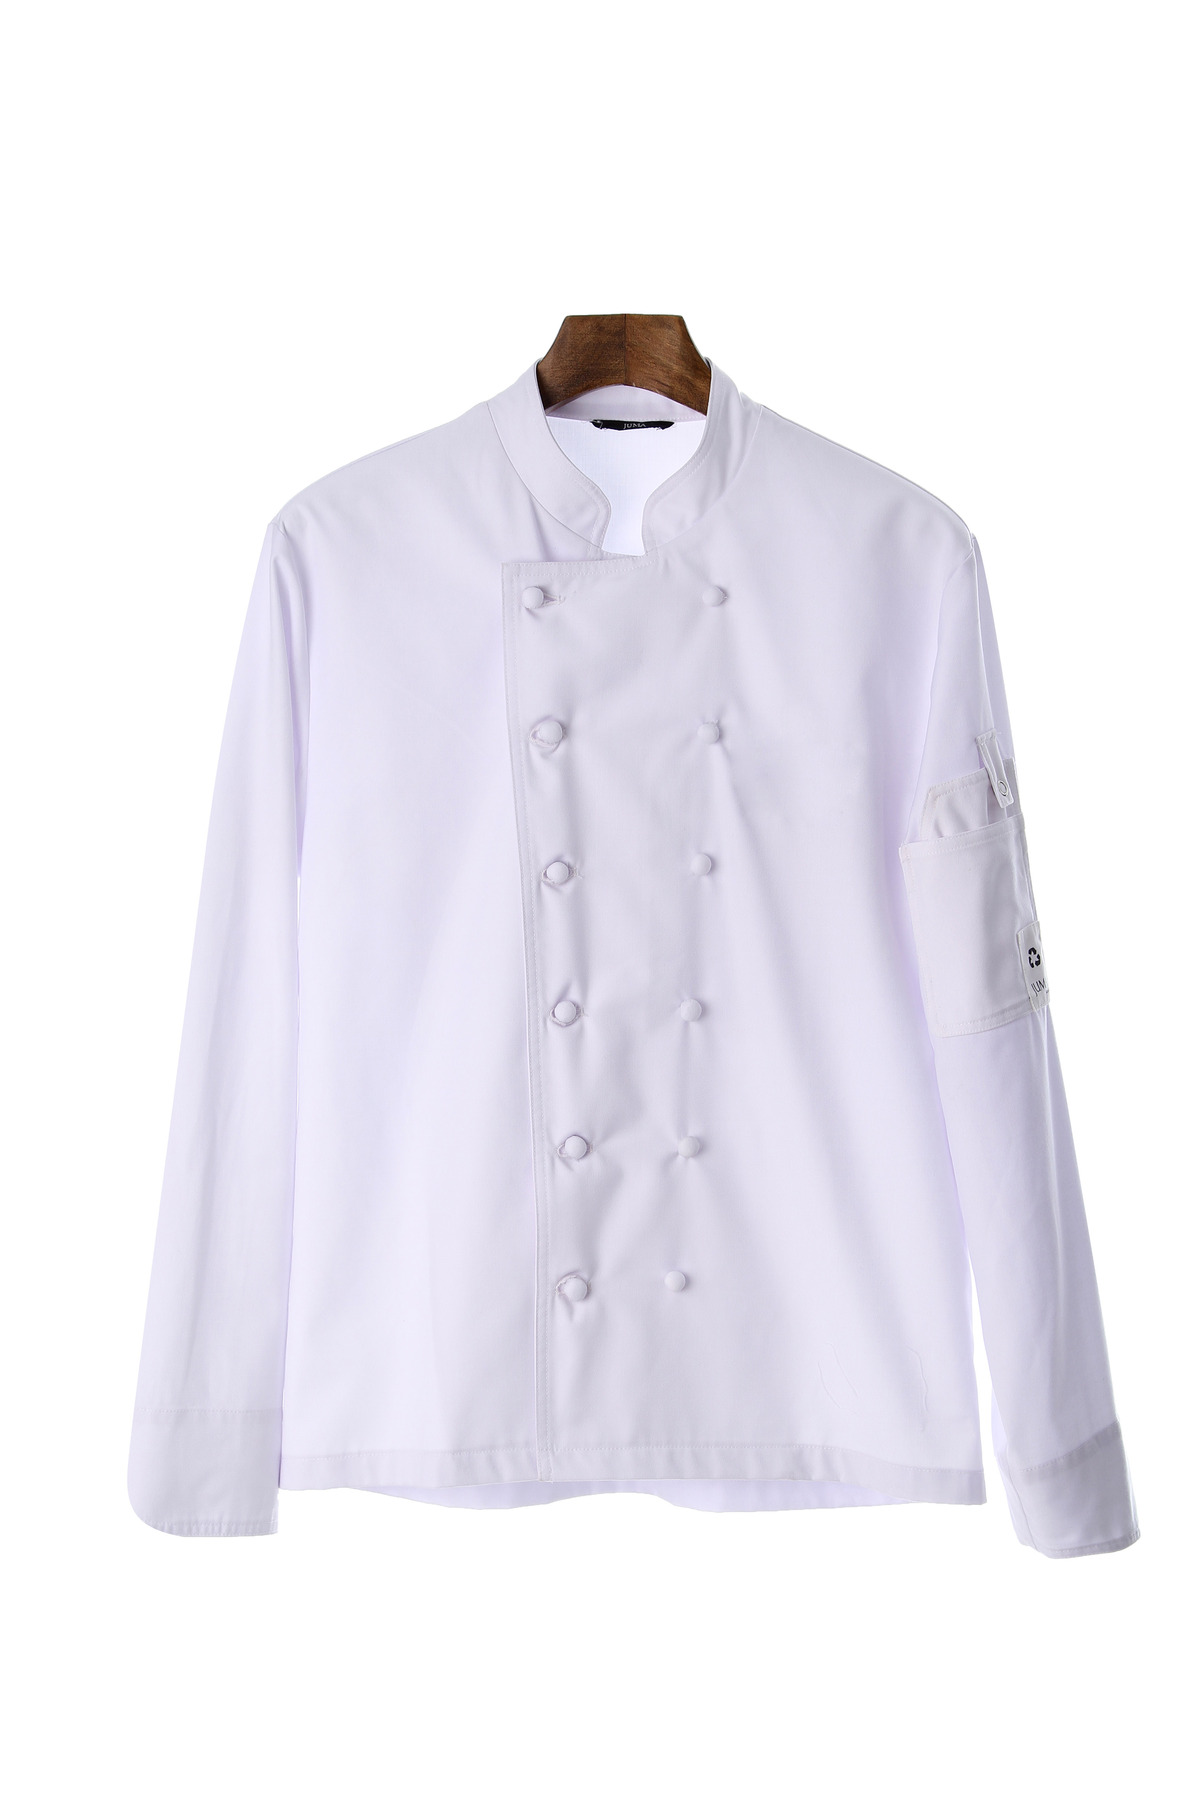 JUMA 厨师风格夹克-8个再生水瓶-白色｜JUMA Chef Style Jacket - 8 Recycled Water Bottles - White